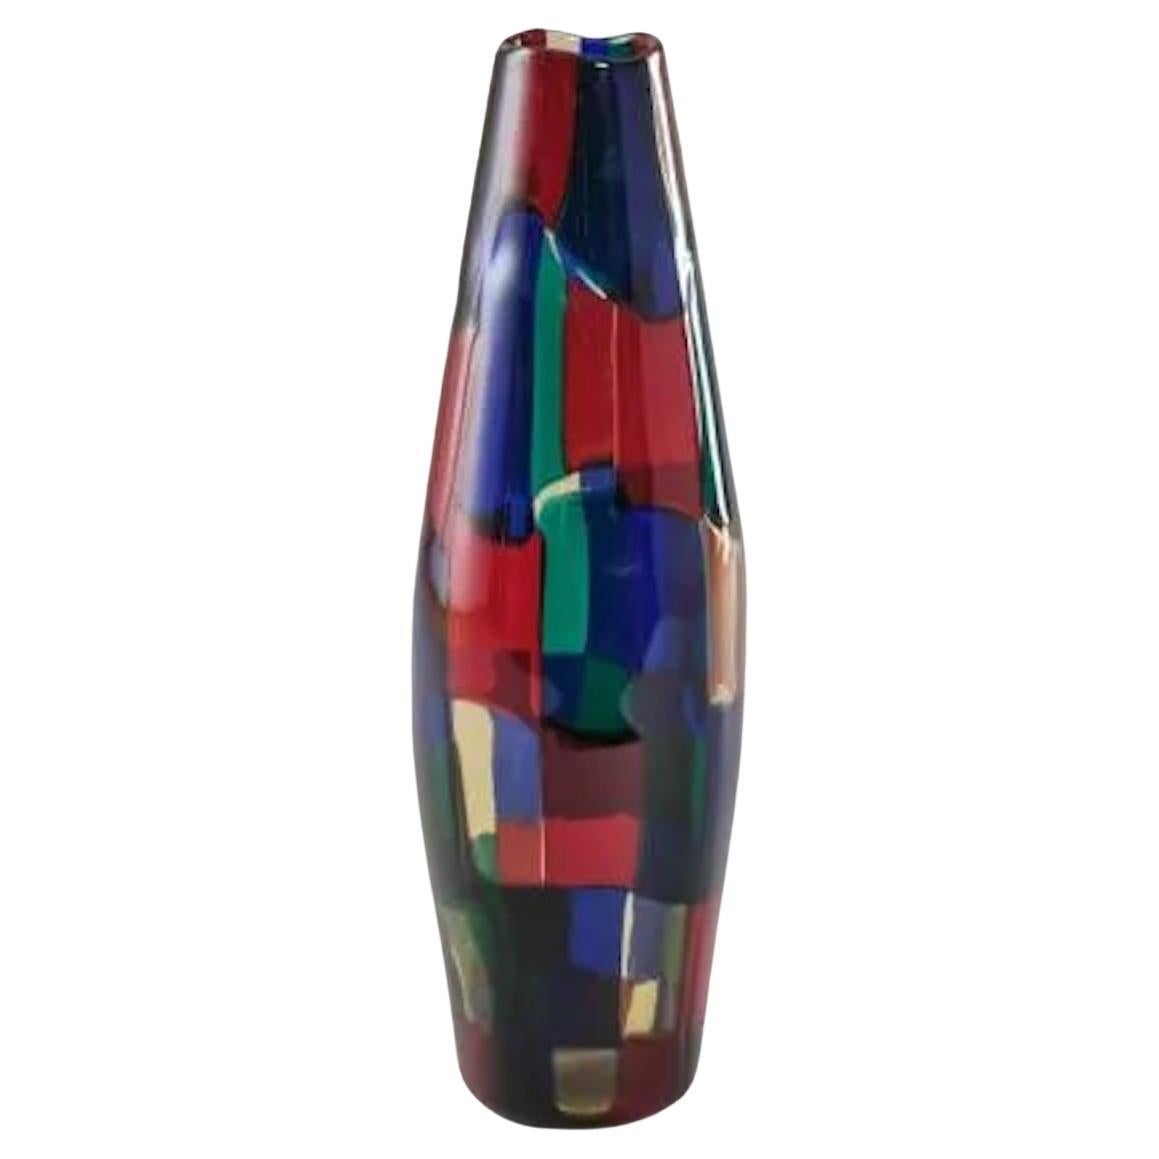 Rare Polychrome Murano Glass "Pezzato" vase by Fulvio Bianconi for Venini